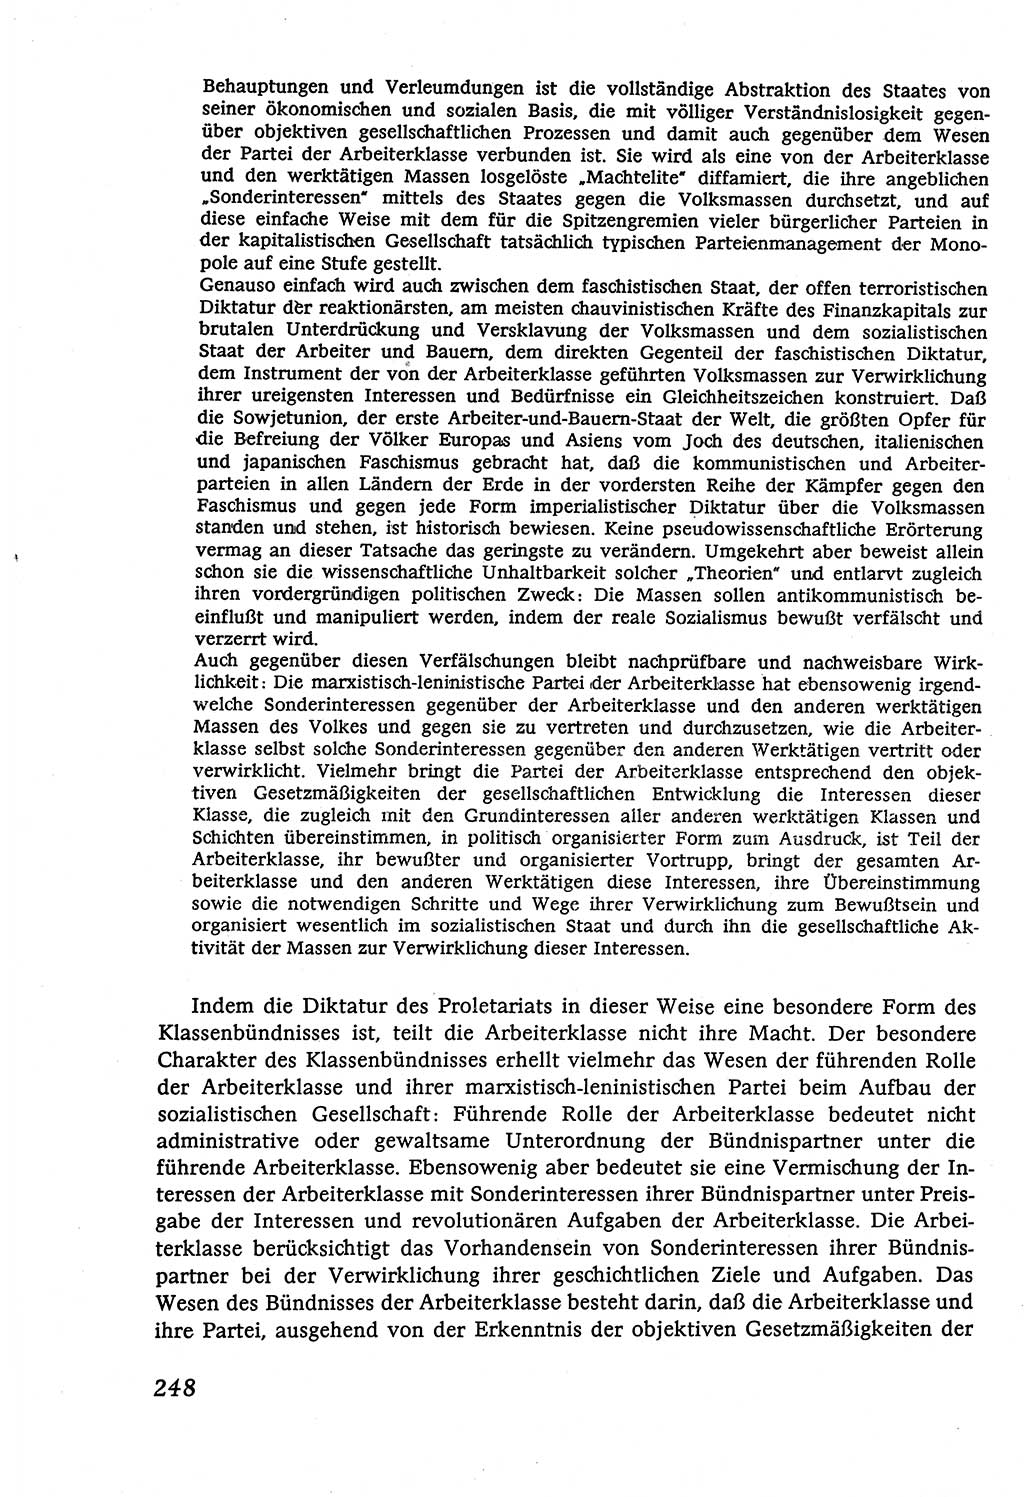 Marxistisch-leninistische (ML) Staats- und Rechtstheorie [Deutsche Demokratische Republik (DDR)], Lehrbuch 1980, Seite 248 (ML St.-R.-Th. DDR Lb. 1980, S. 248)